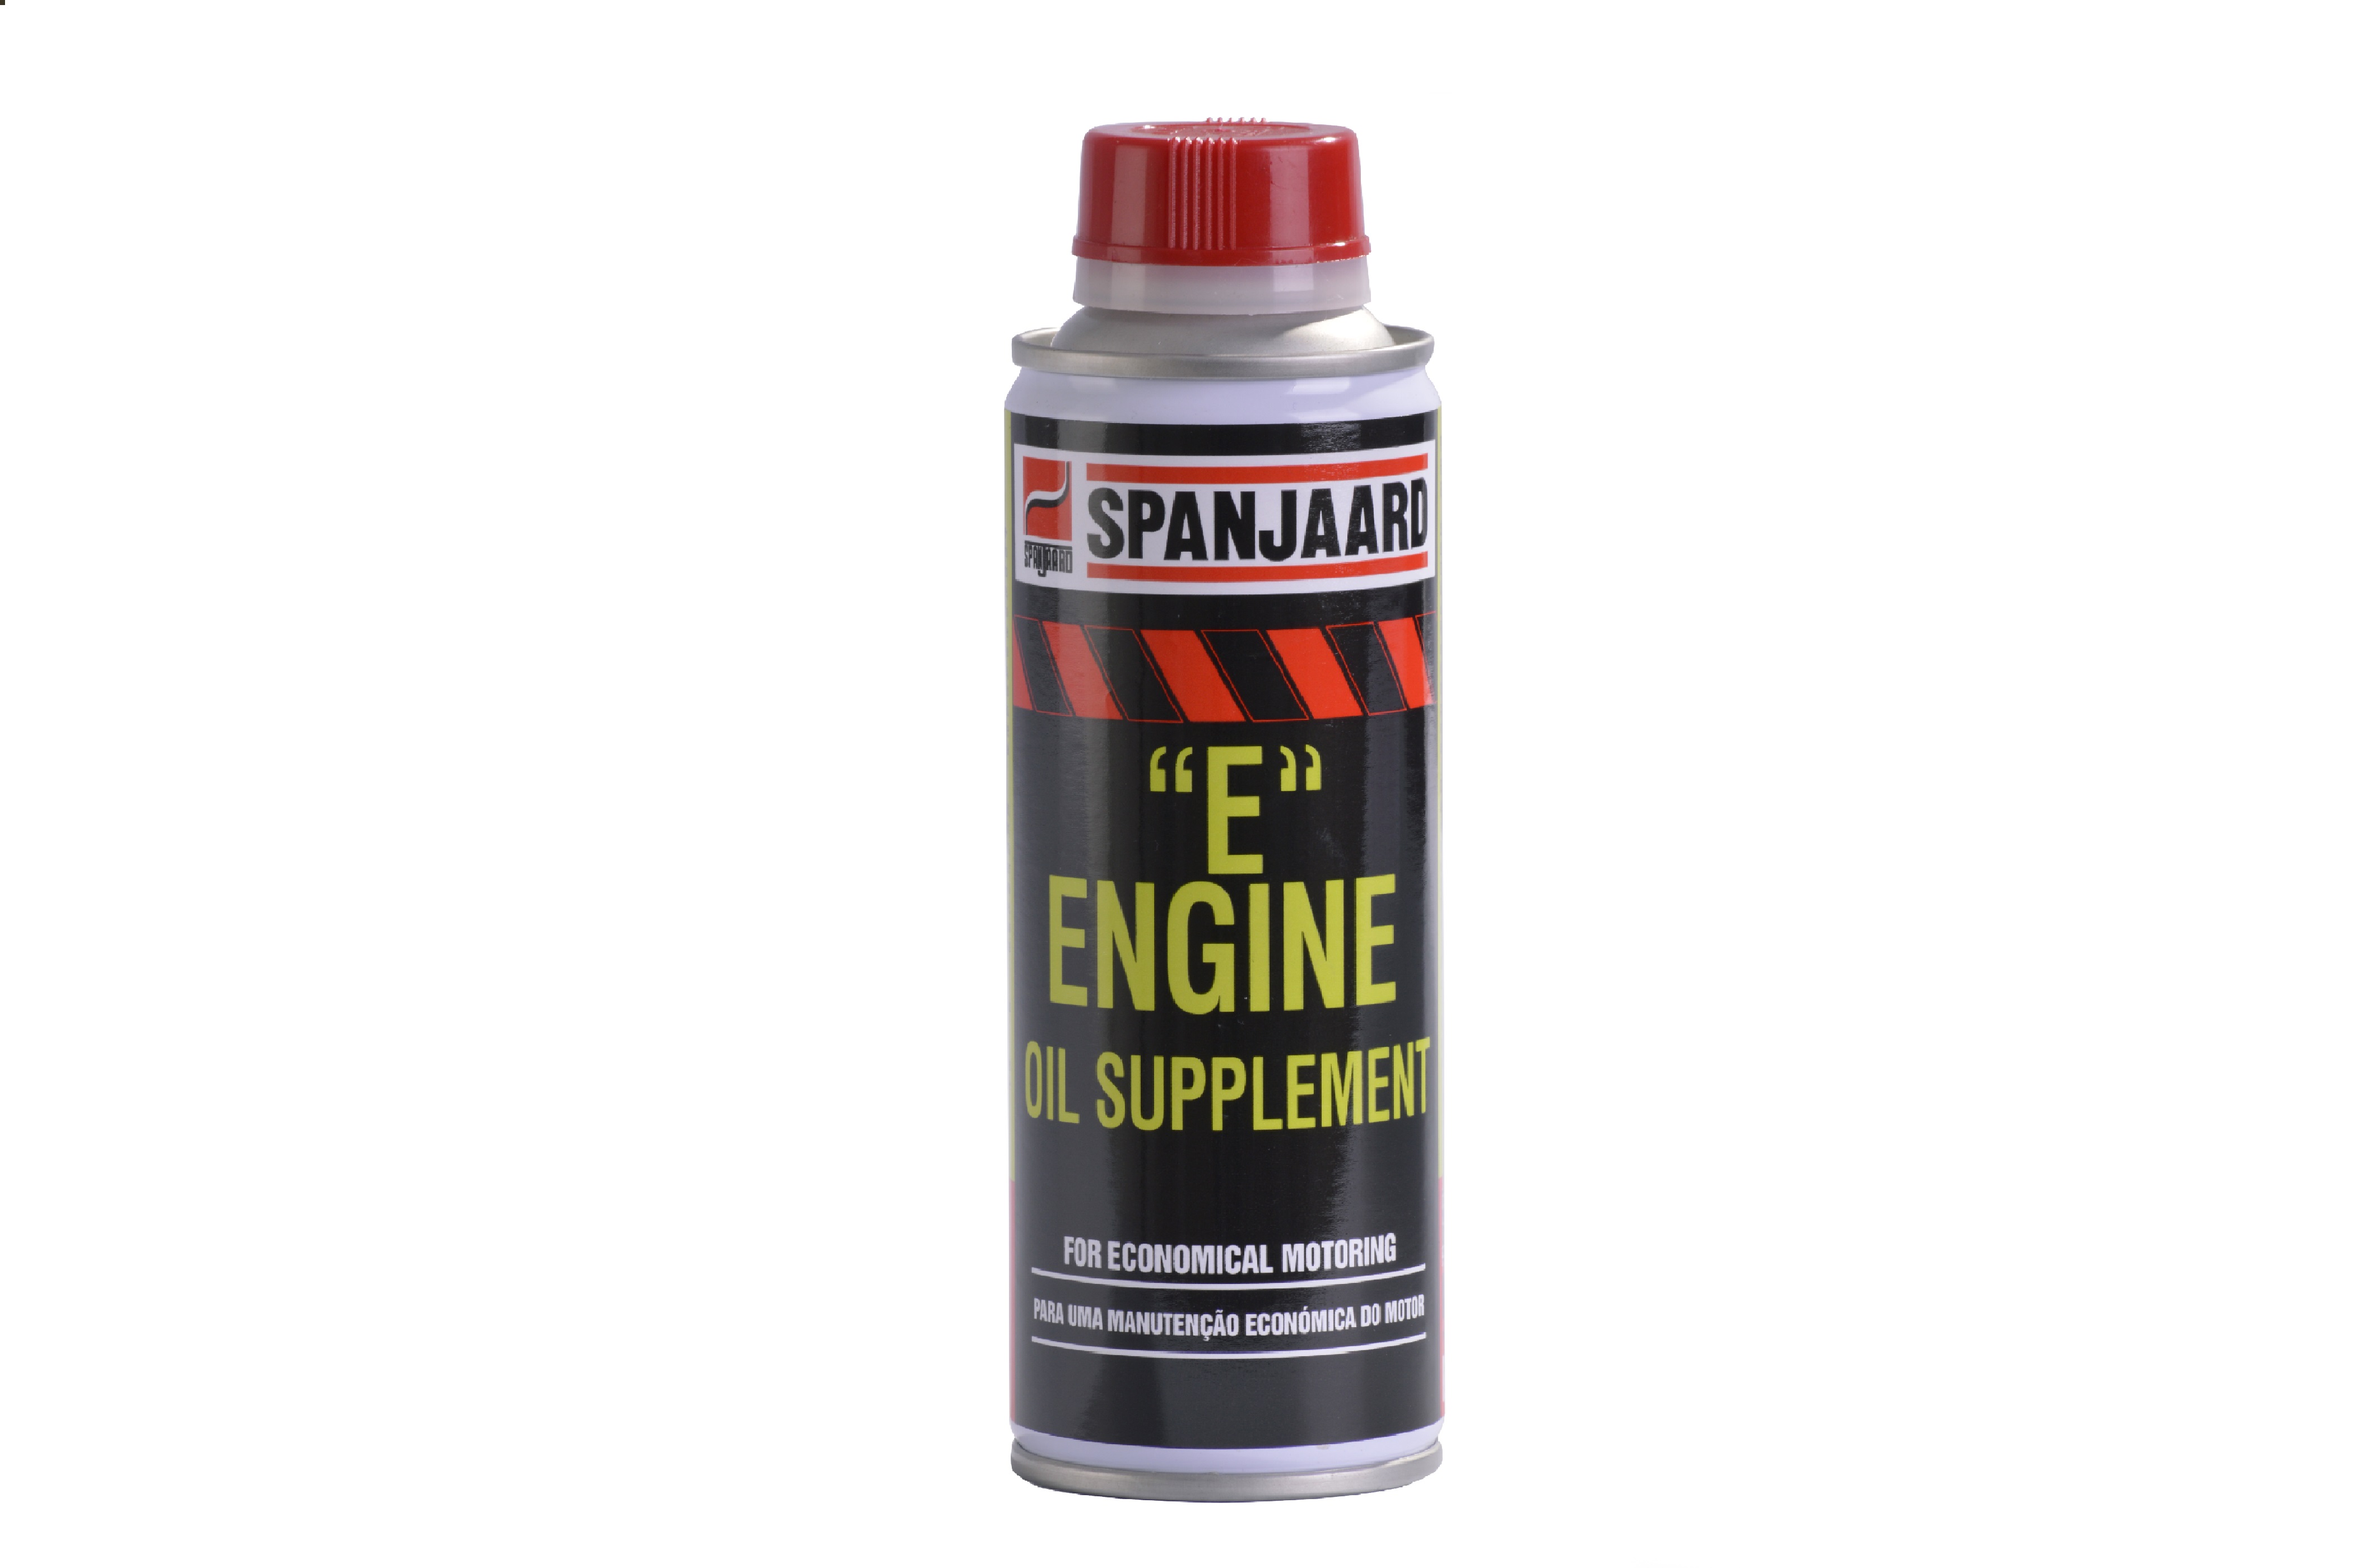 E Engine oil supplment